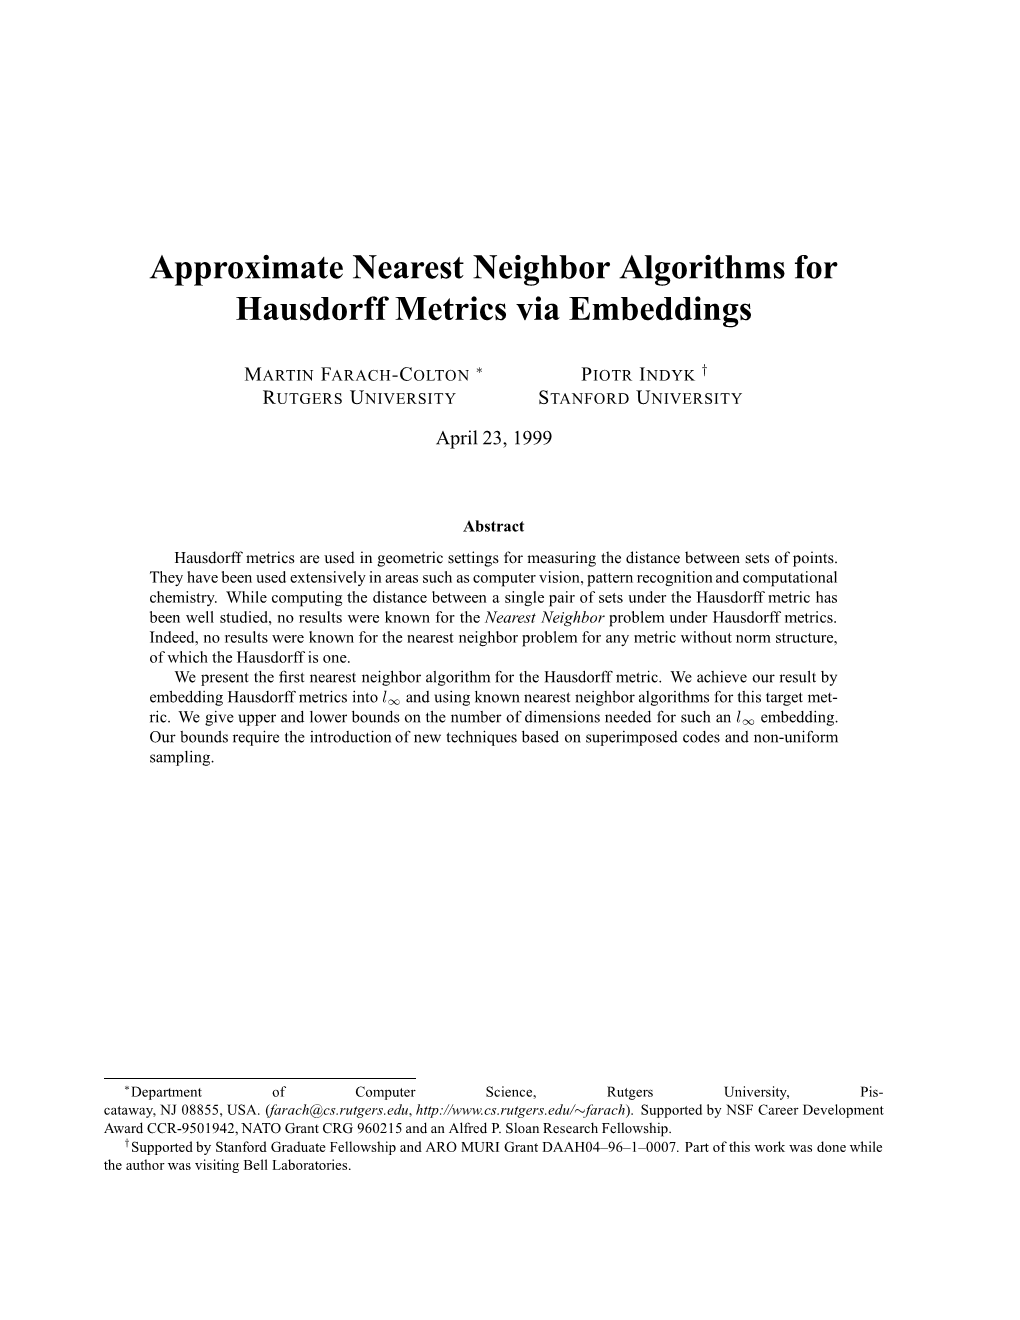 Approximate Nearest Neighbor Algorithms for Hausdorff Metrics Via Embeddings